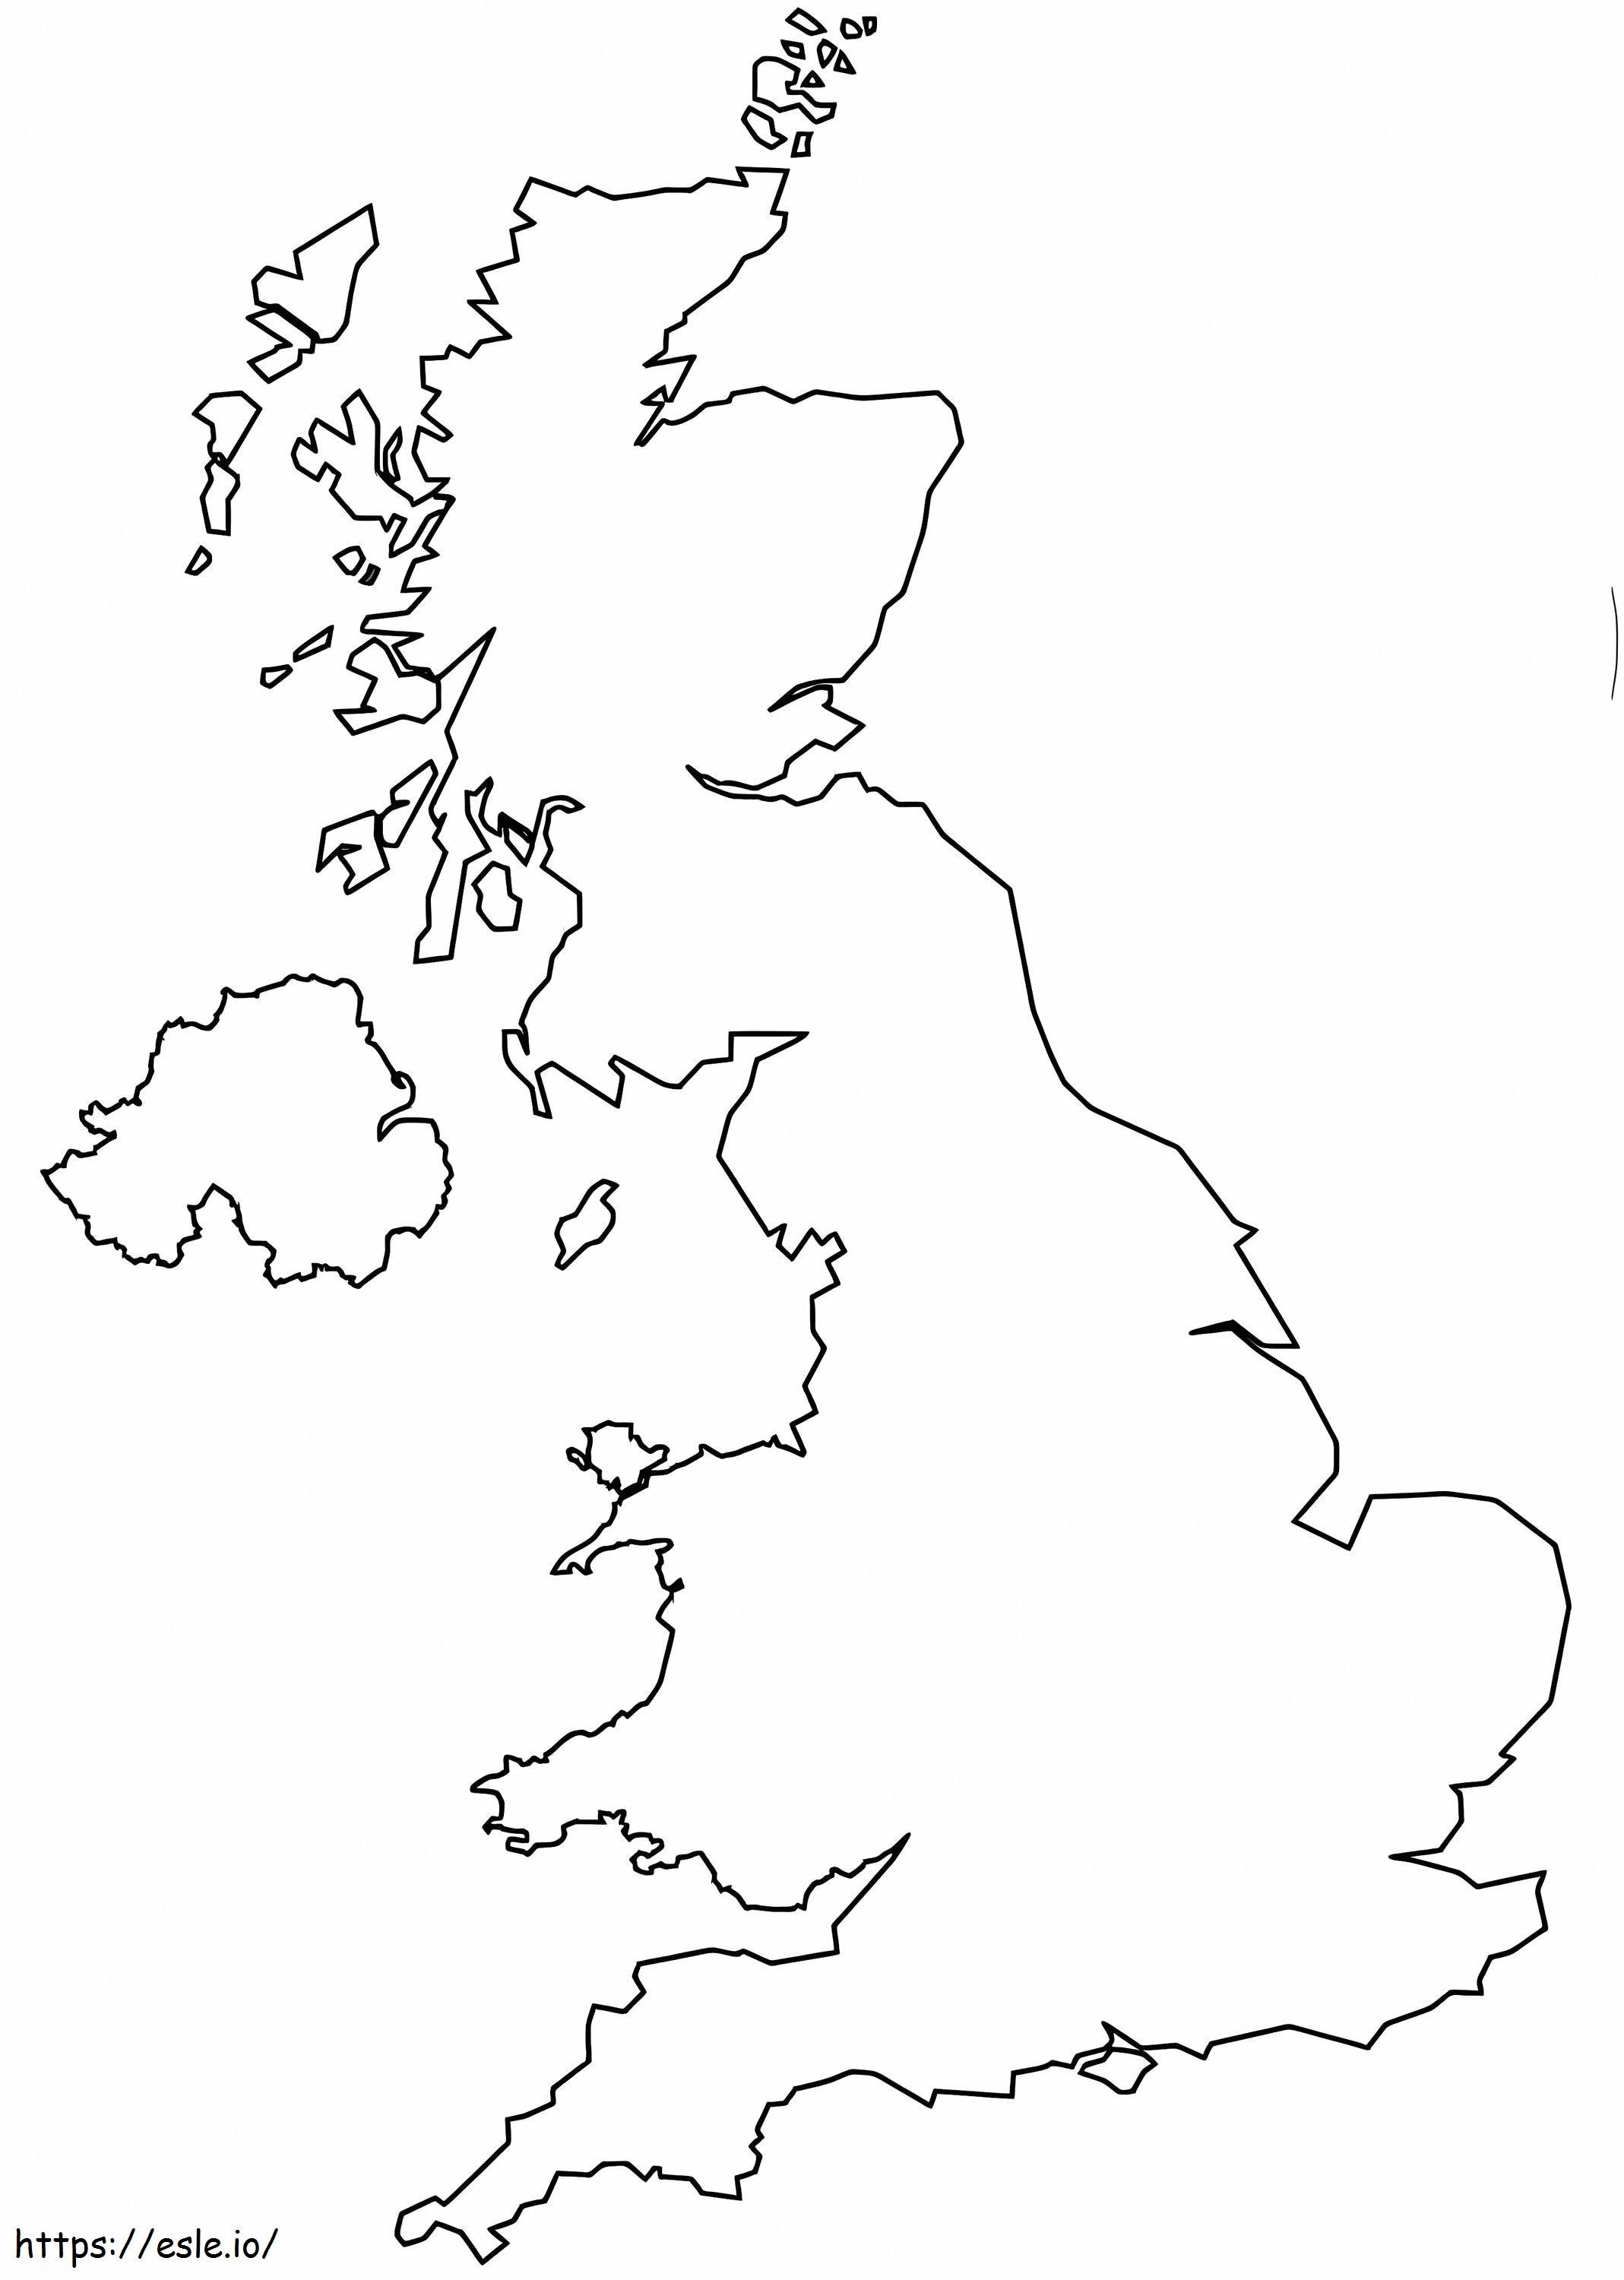 Overzichtskaart van het Verenigd Koninkrijk kleurplaat kleurplaat